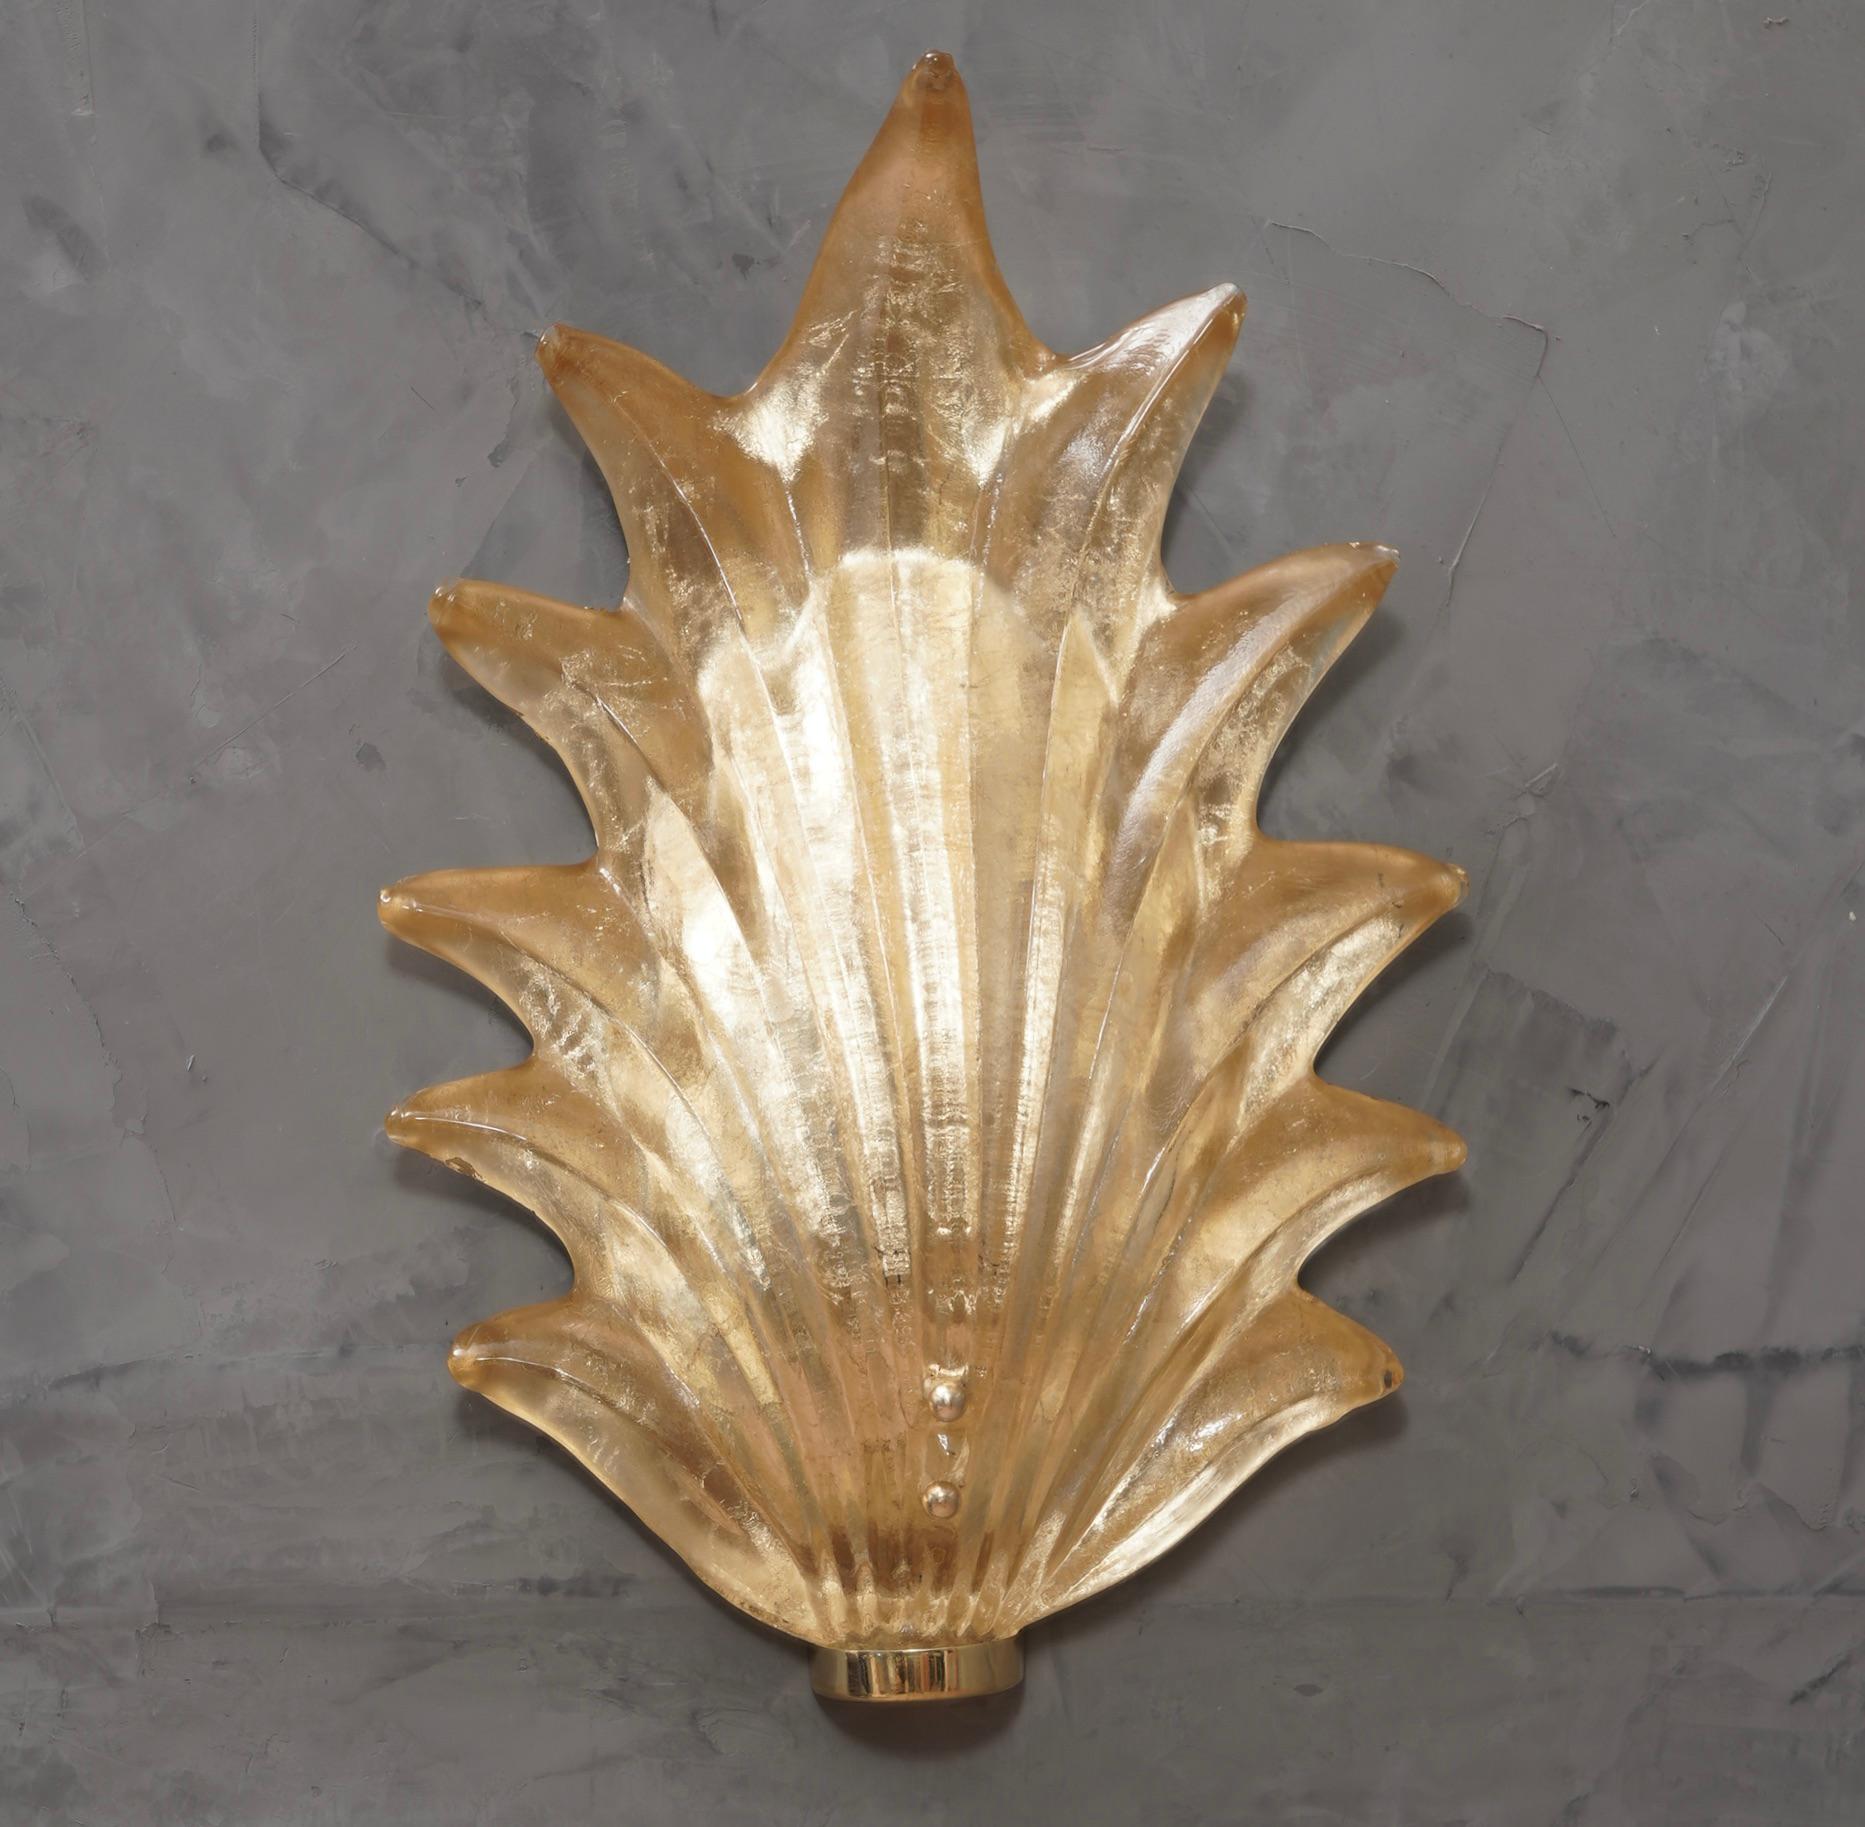 Majestic Blatt in Murano-Glas von einer wunderbaren goldenen Farbe, die noch schöner durch die polierte Messing Basis.

Die Applikation besteht aus einer Messingstruktur, die mit Dübeln an der Wand befestigt wird, und einem großen Blatt aus goldenem